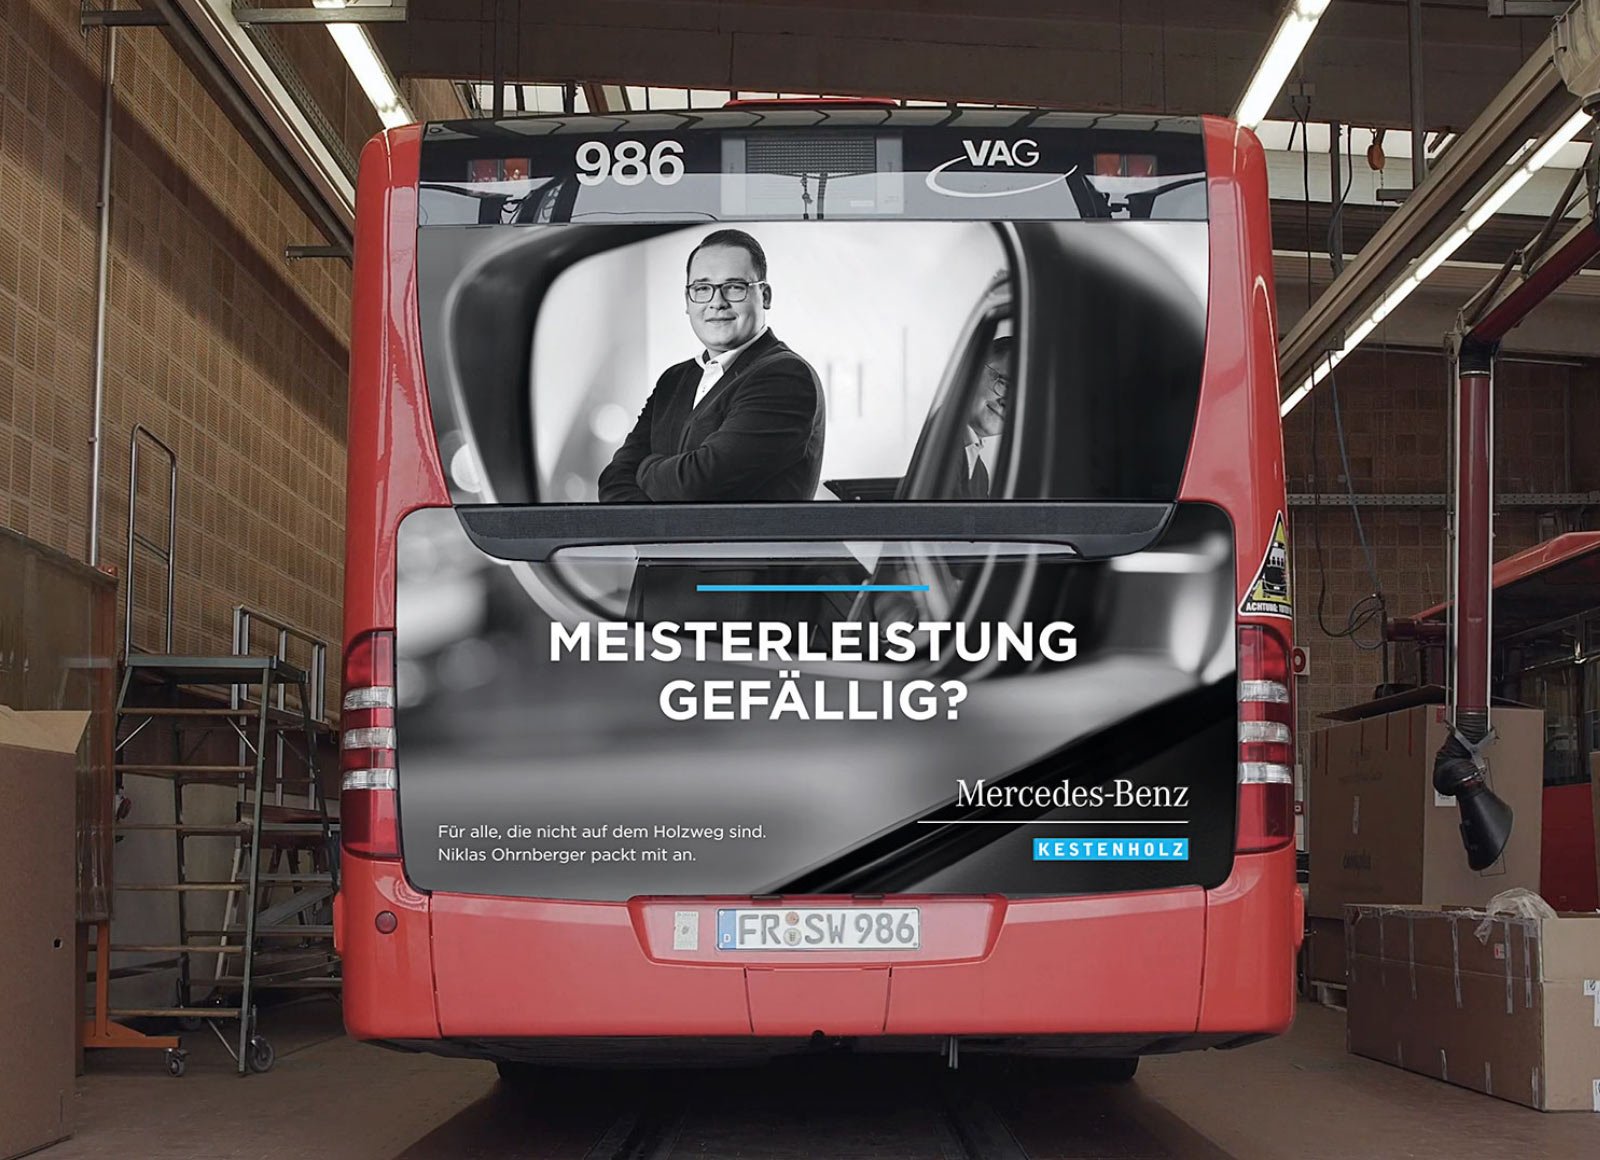 Kampagnenmotiv auf dem Heck eines Busses